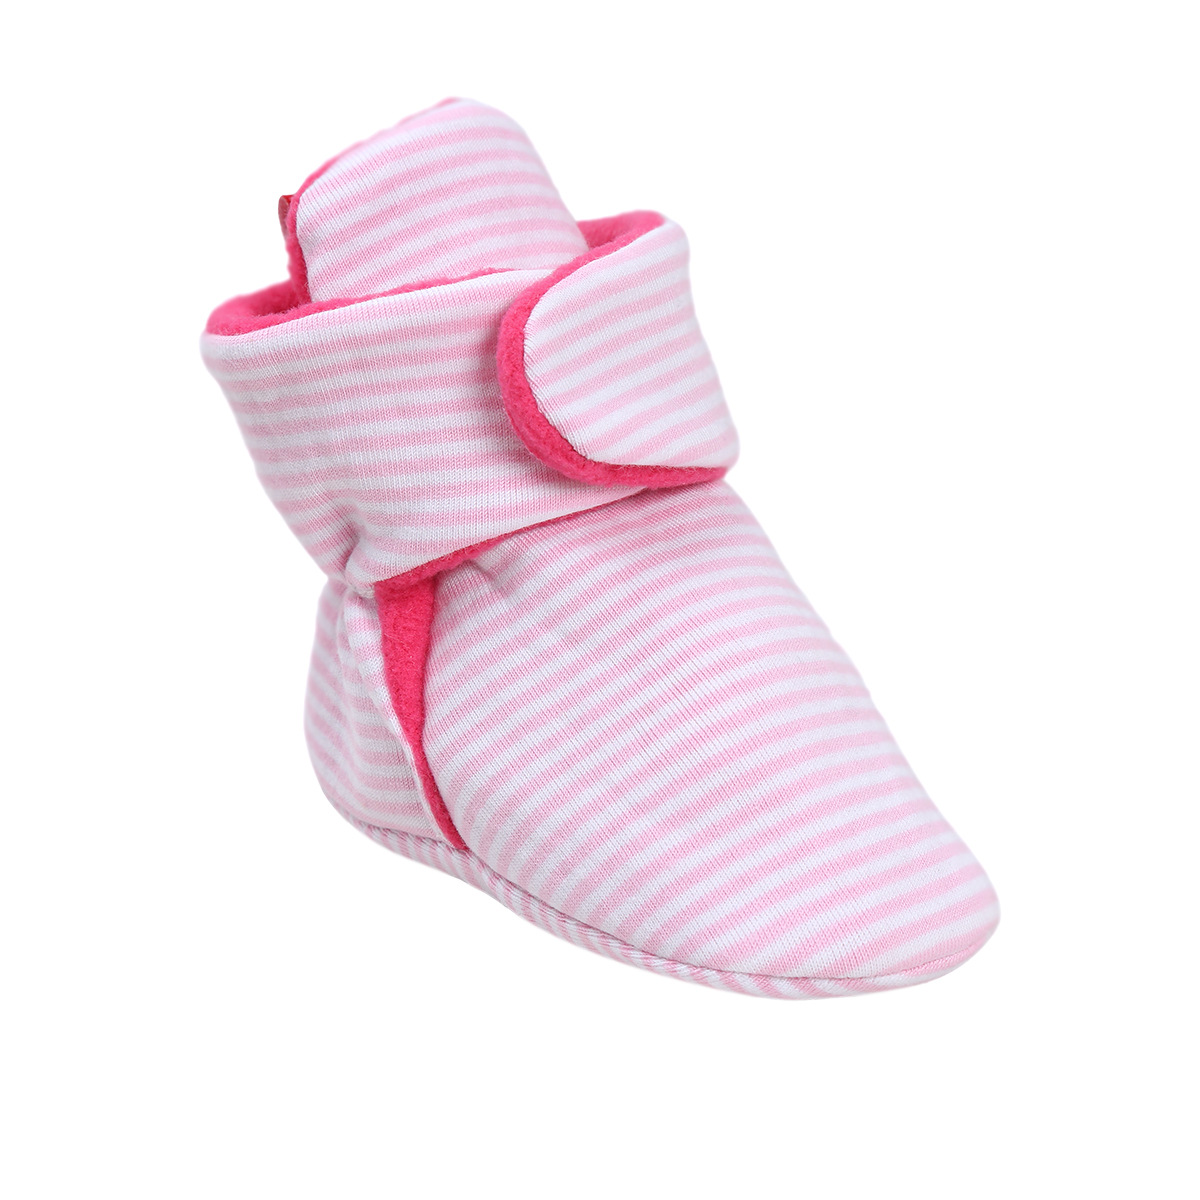 Chaussures bébé en coton - Ref 3436821 Image 126